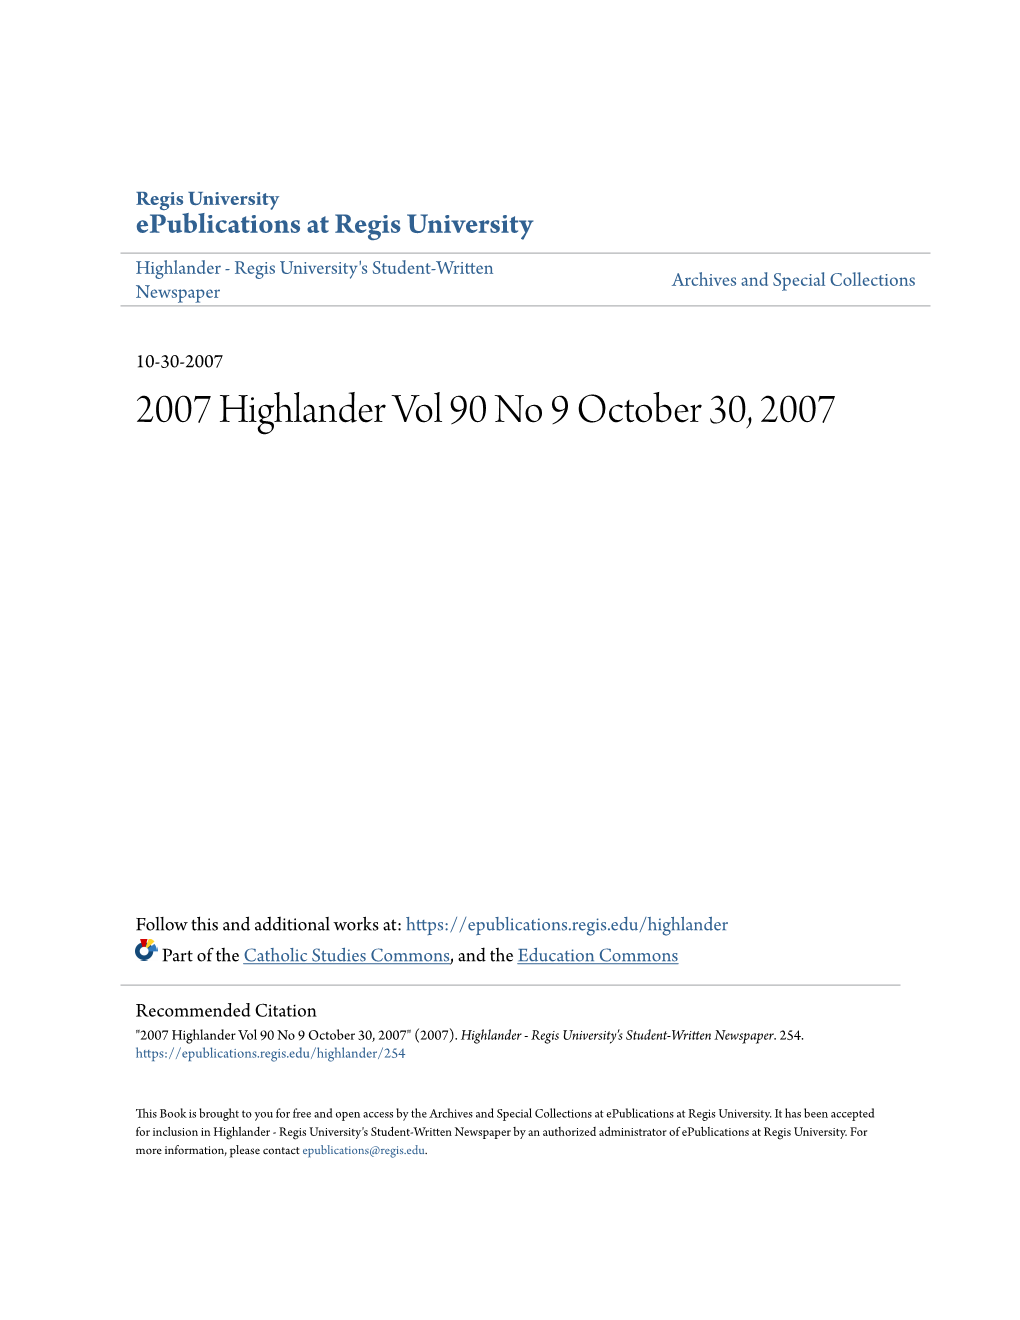 2007 Highlander Vol 90 No 9 October 30, 2007